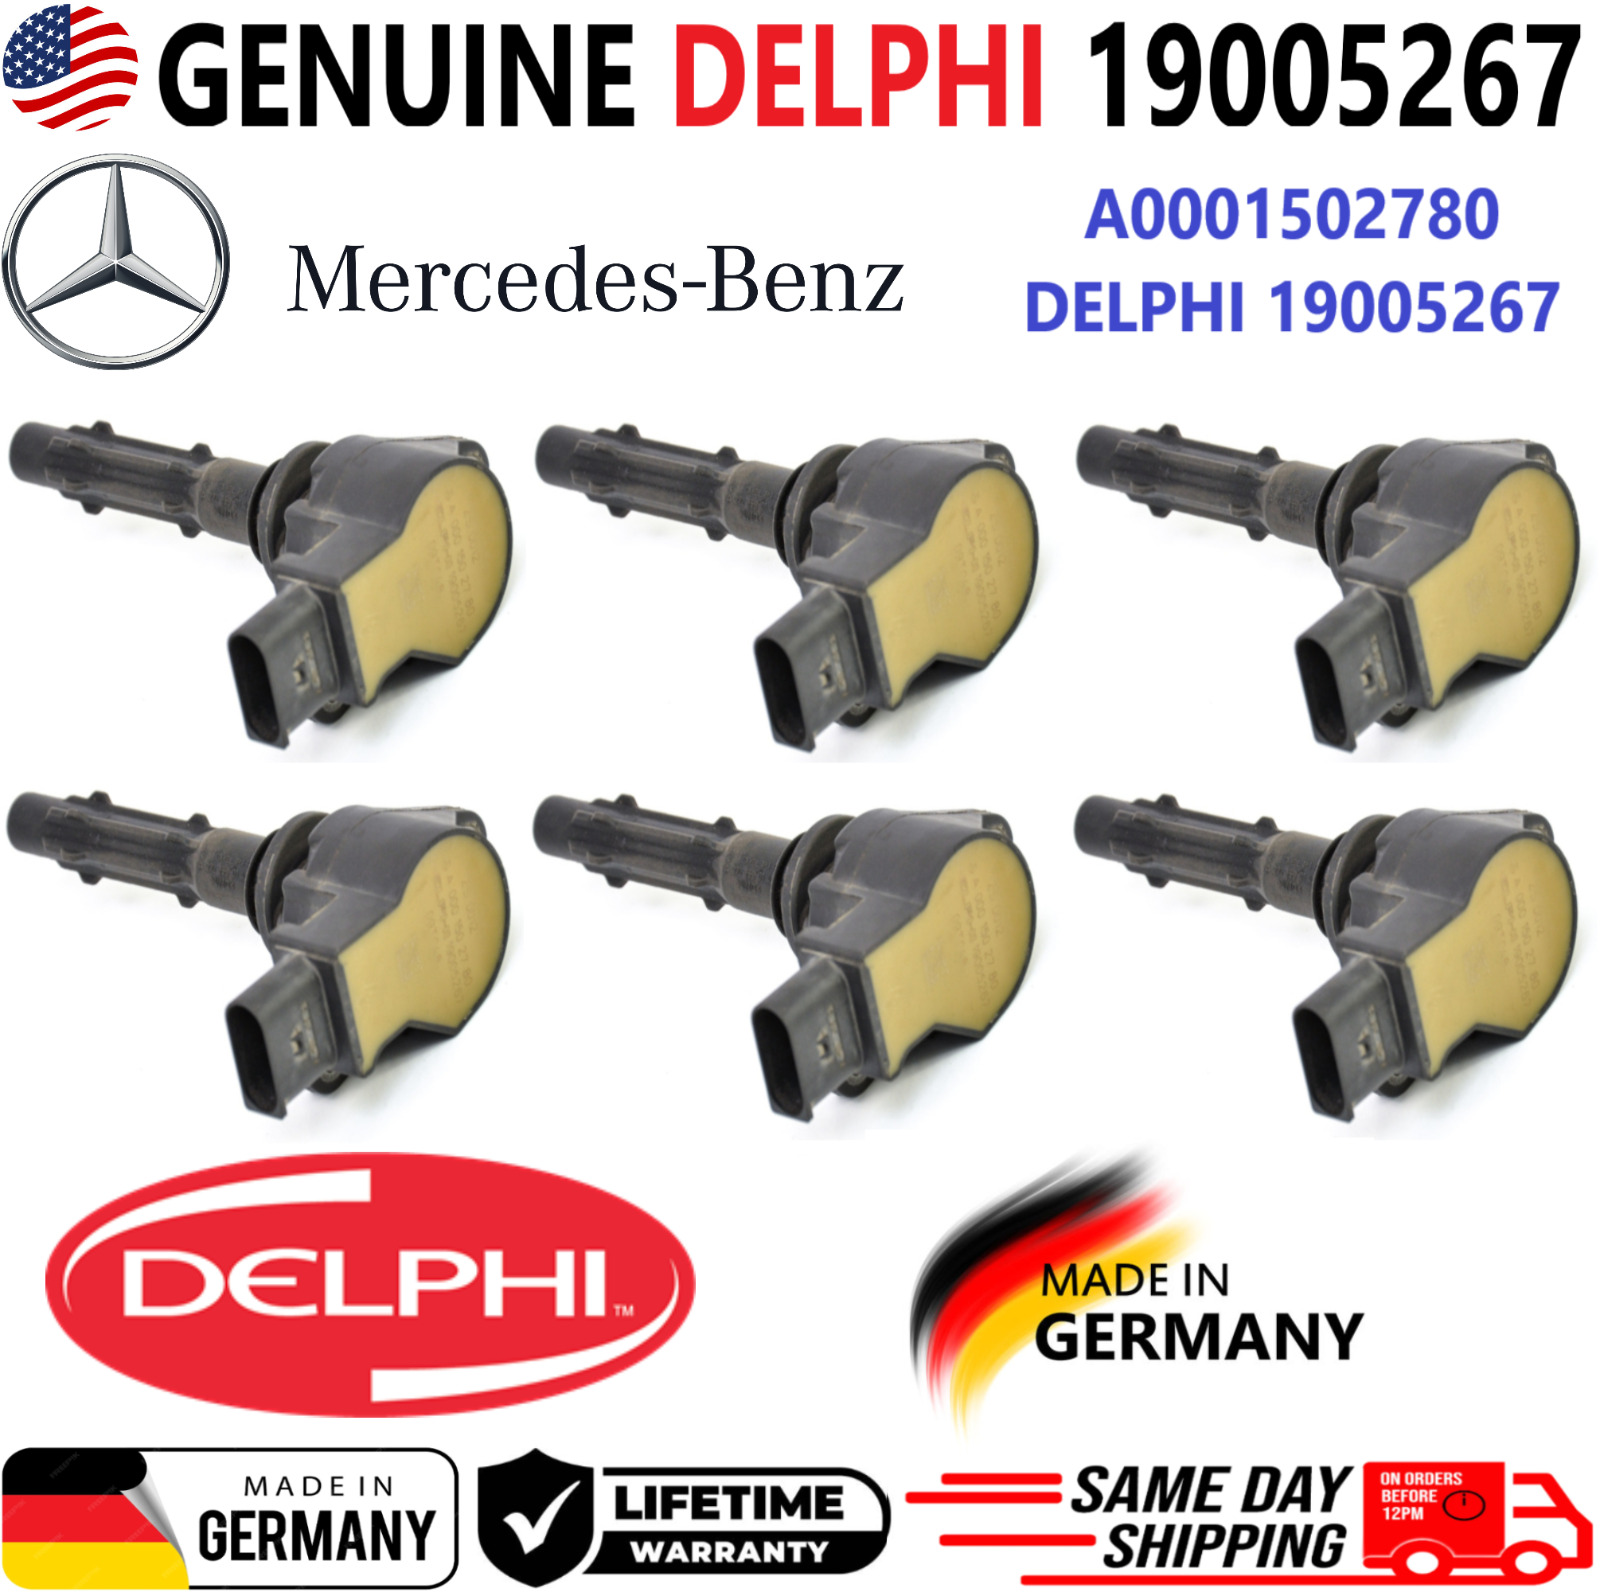 OEM GENUINE DELPHI x6 Ignition Coils For 2005-2014 Mercedes-Benz V6, A0001502780